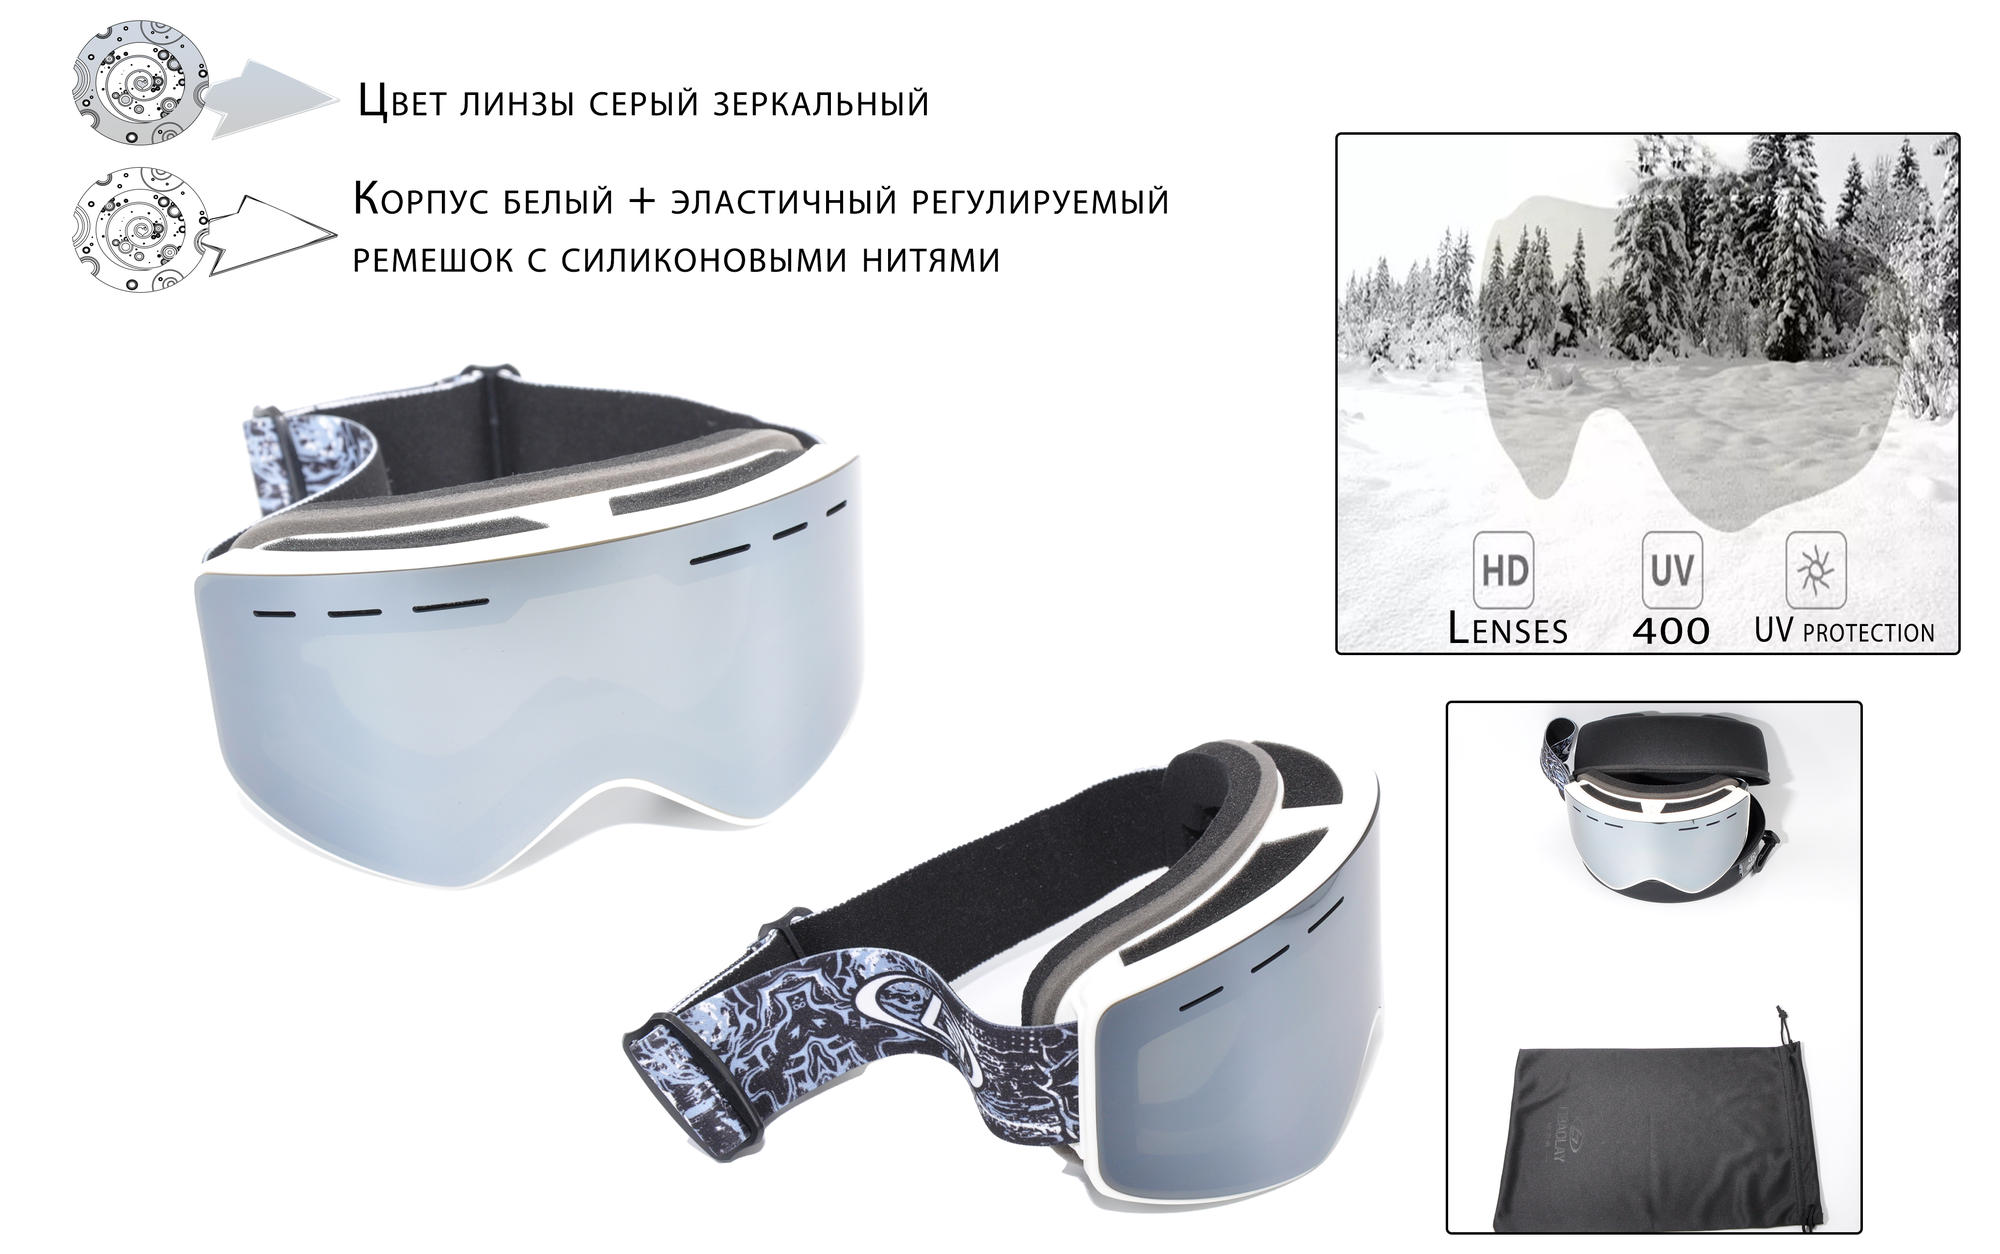 Горнолыжные очки Н57 для зимнего вида спорта Анти-туман со сменными магнитными линзами (Lenses Color: Mercury) и УФ-защитой (UV400)